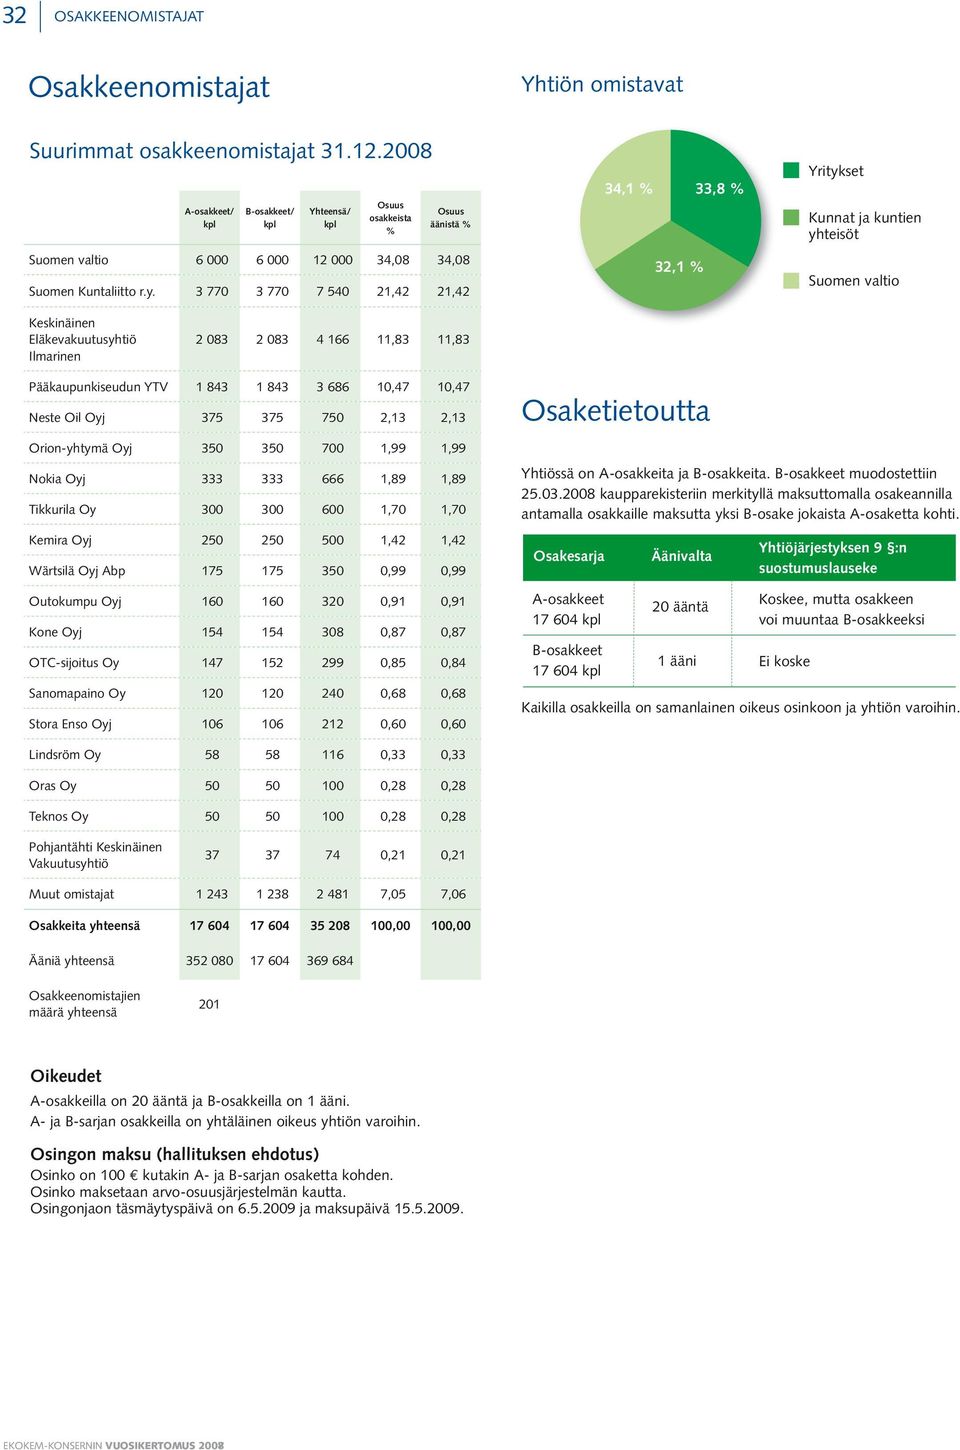 3 770 3 770 7 540 21,42 21,42 34,1 % 33,8 % 32,1 % Yritykset kunnat ja kuntien yhteisöt suomen valtio keskinäinen eläkevakuutusyhtiö ilmarinen 2 083 2 083 4 166 11,83 11,83 pääkaupunkiseudun YtV 1